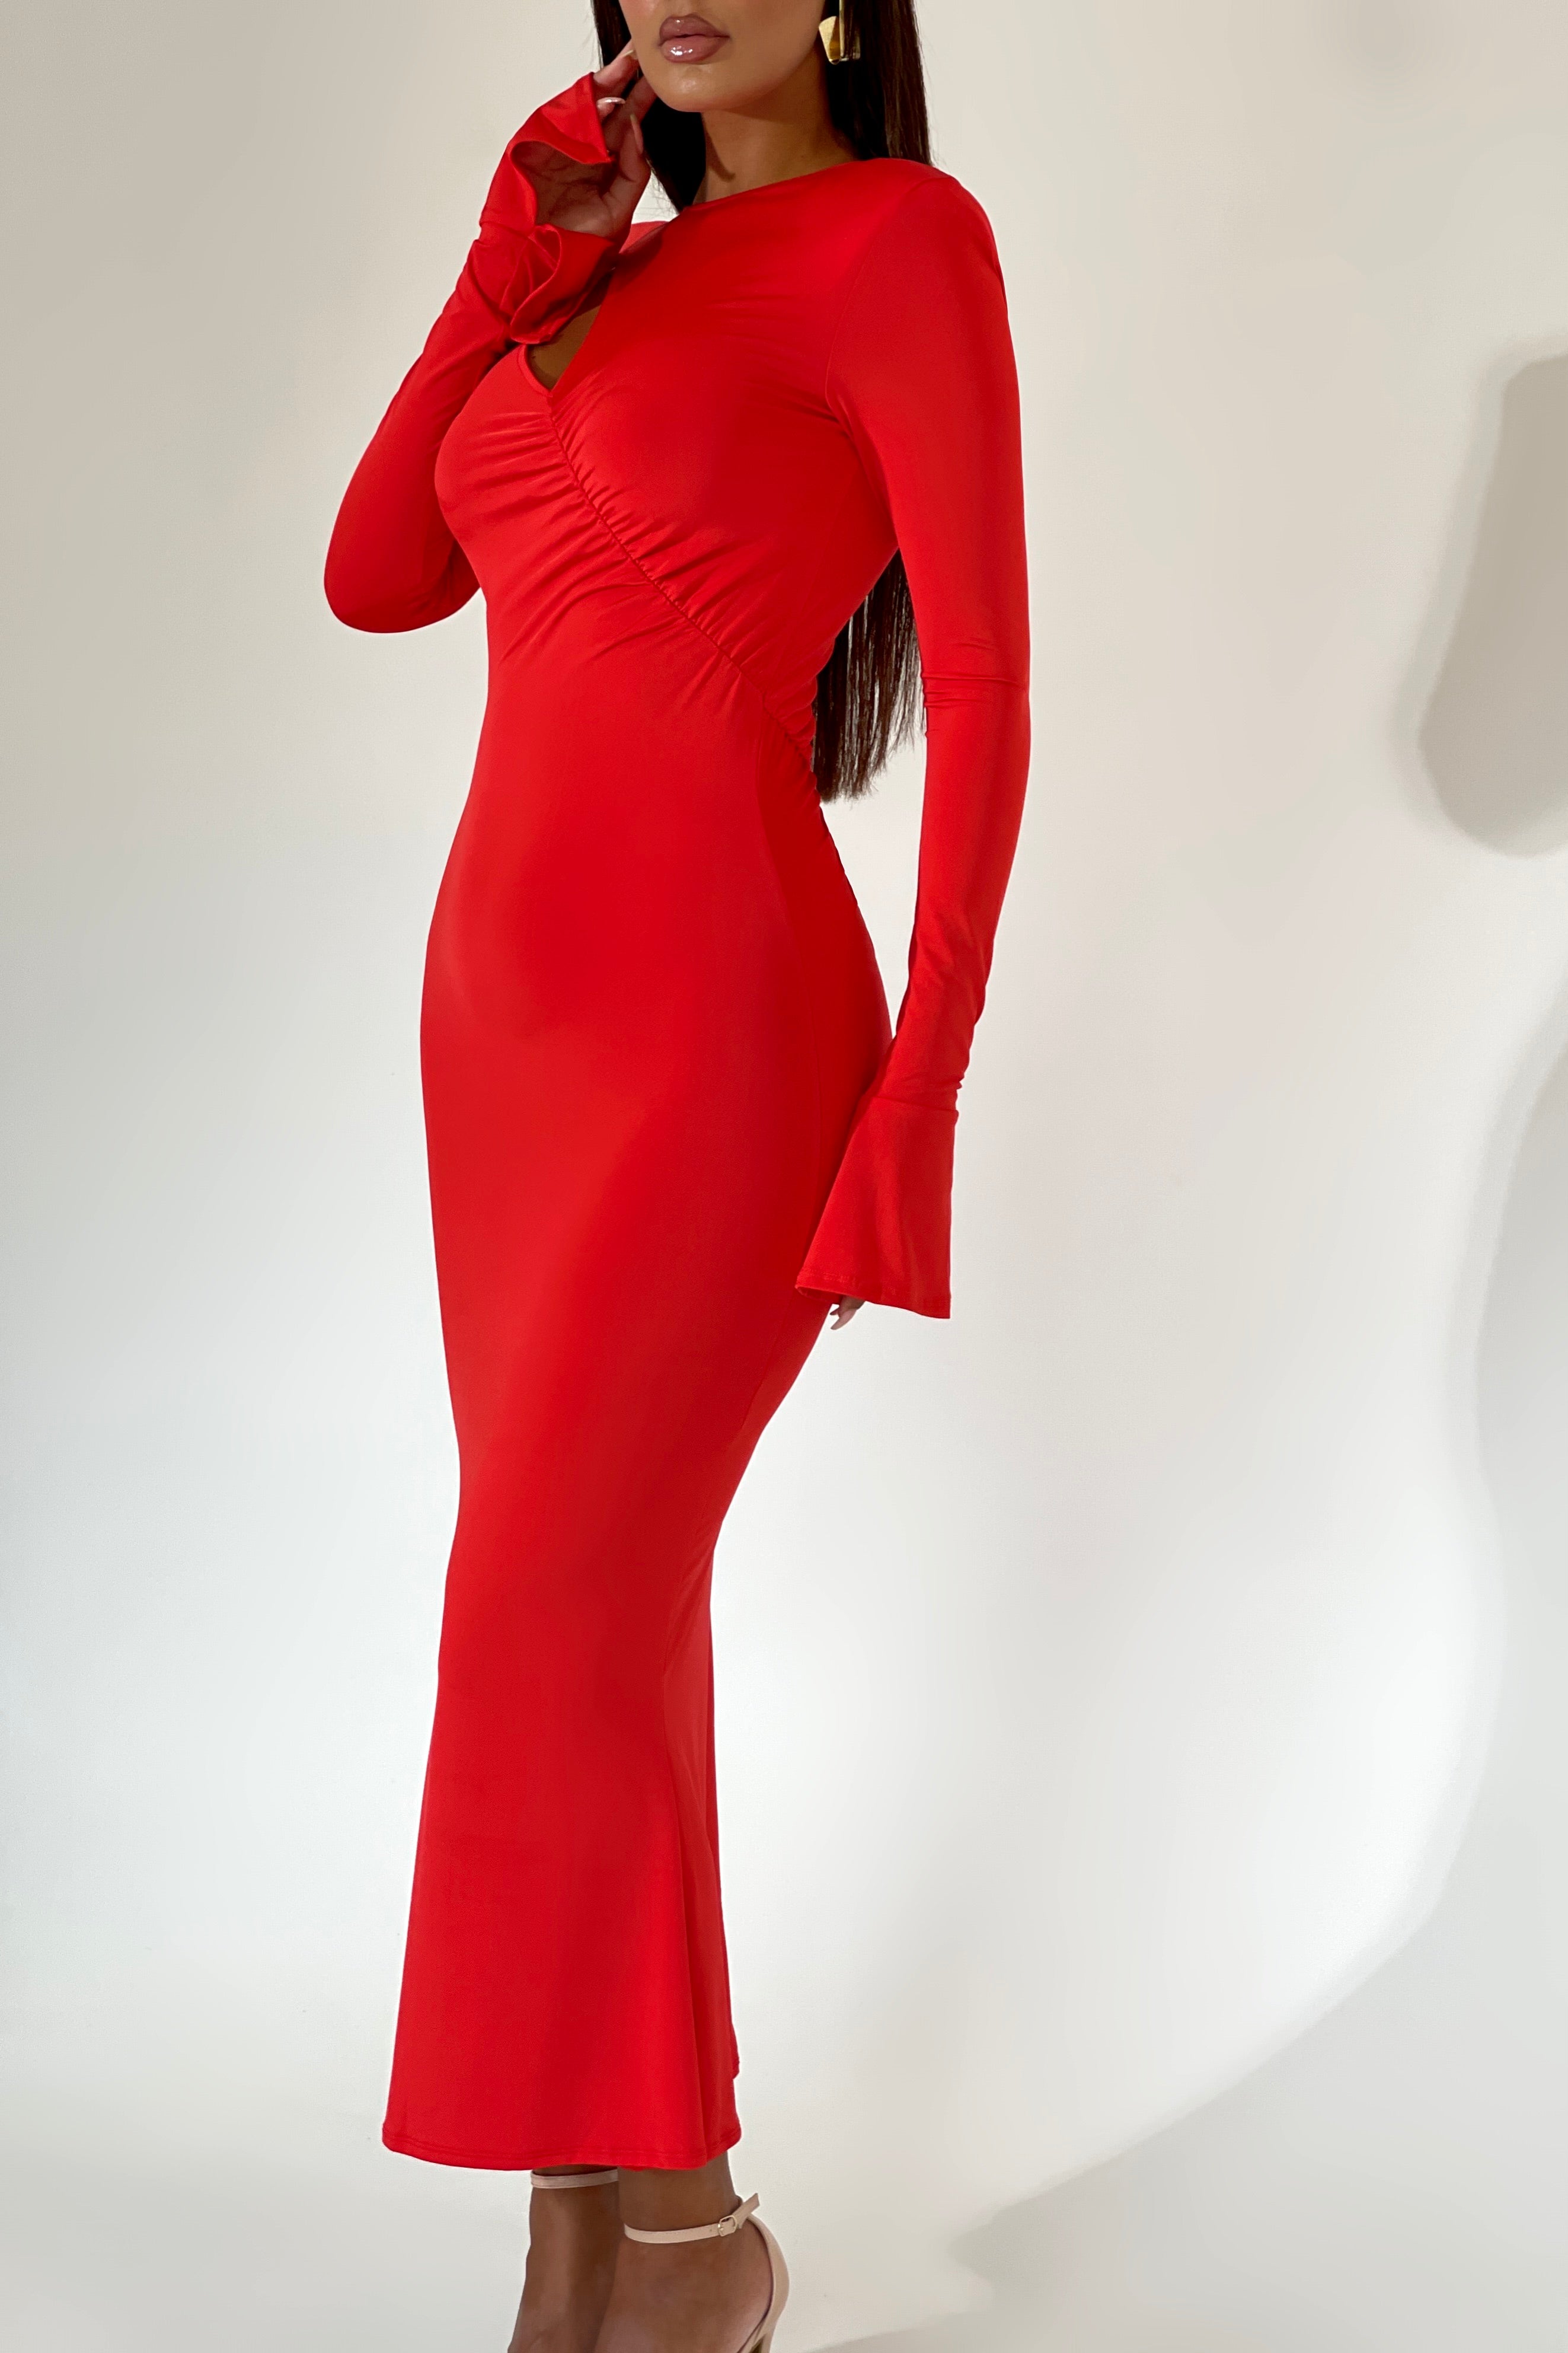 Emori Red Dress